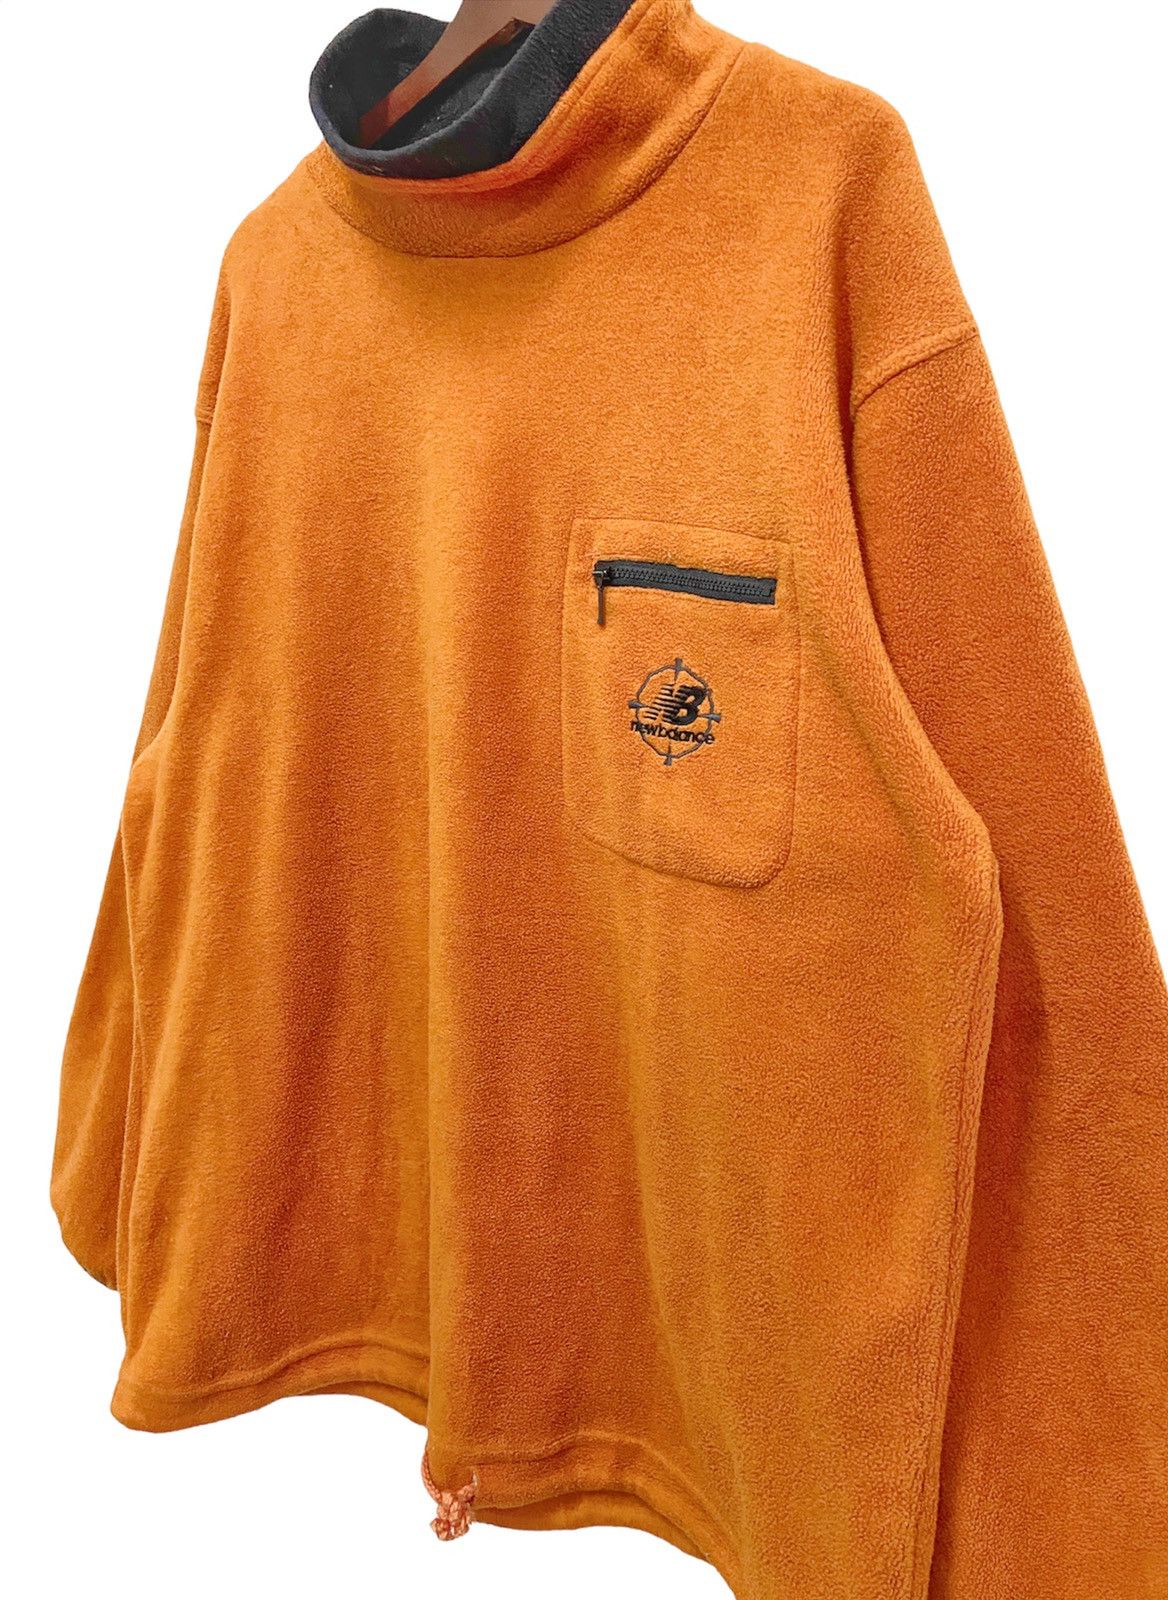 Vintage New Balance Fleece Sweatshirt - 3